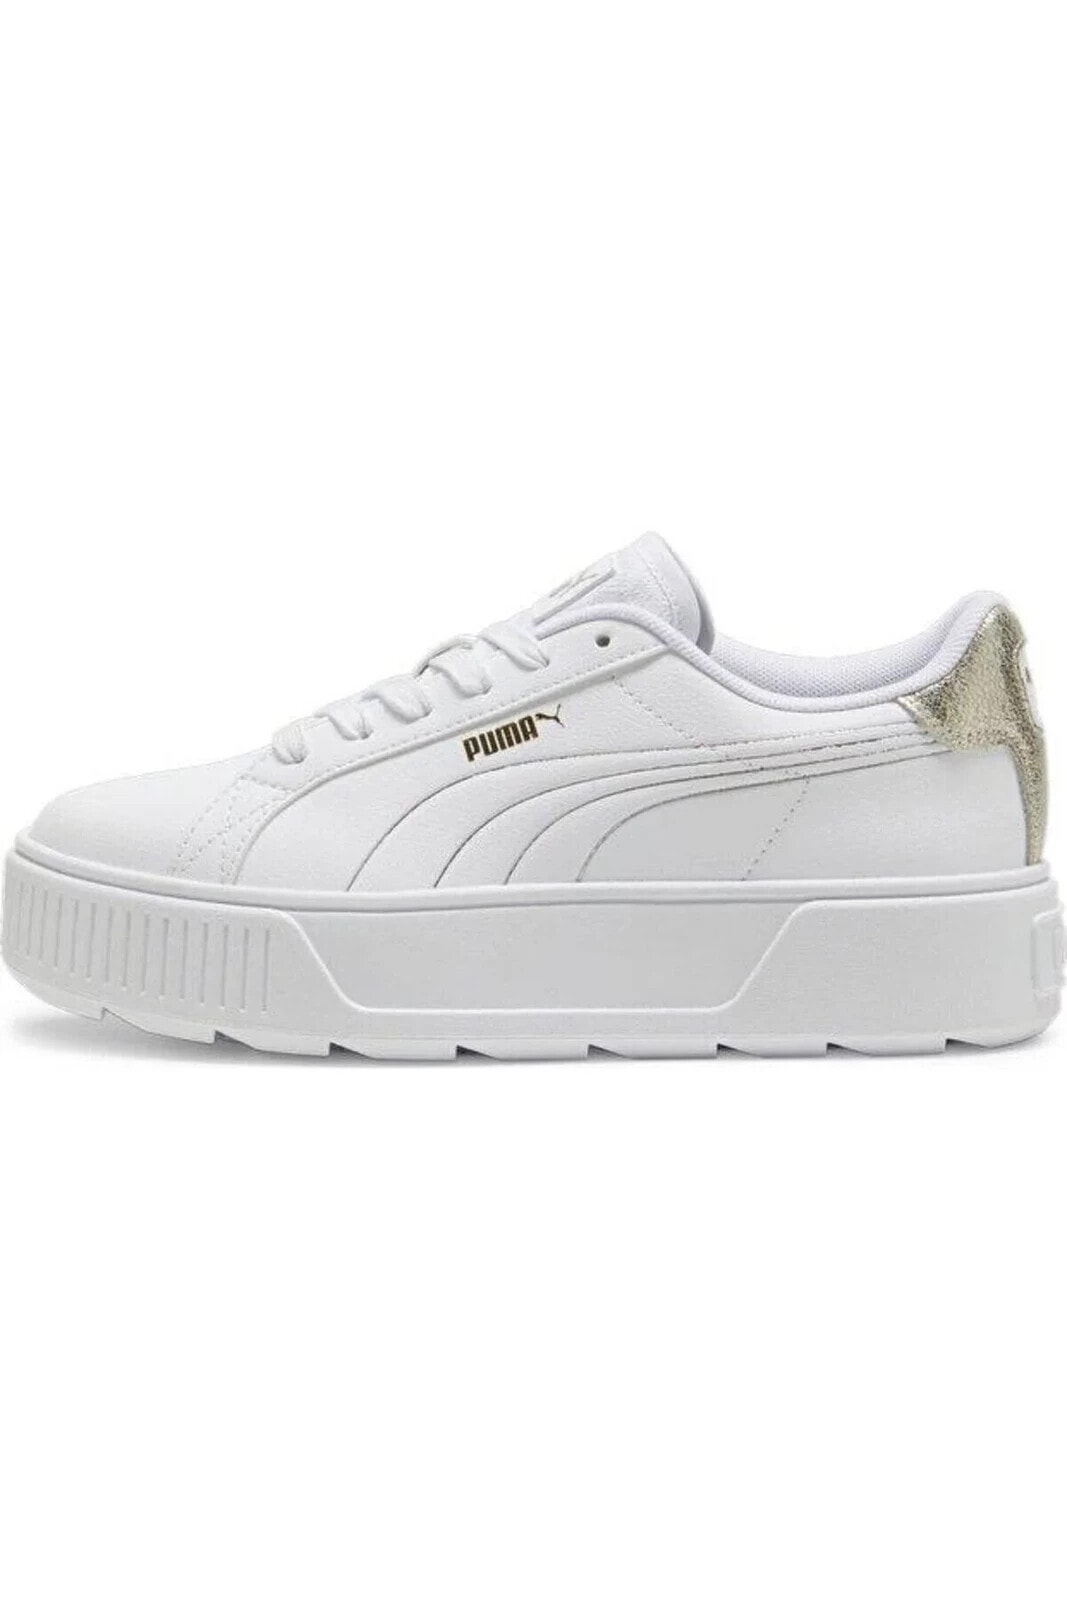 Karmen Metallic Shine 395099 01 Kadın Sneaker Ayakkabı Beyaz Altın 36-40